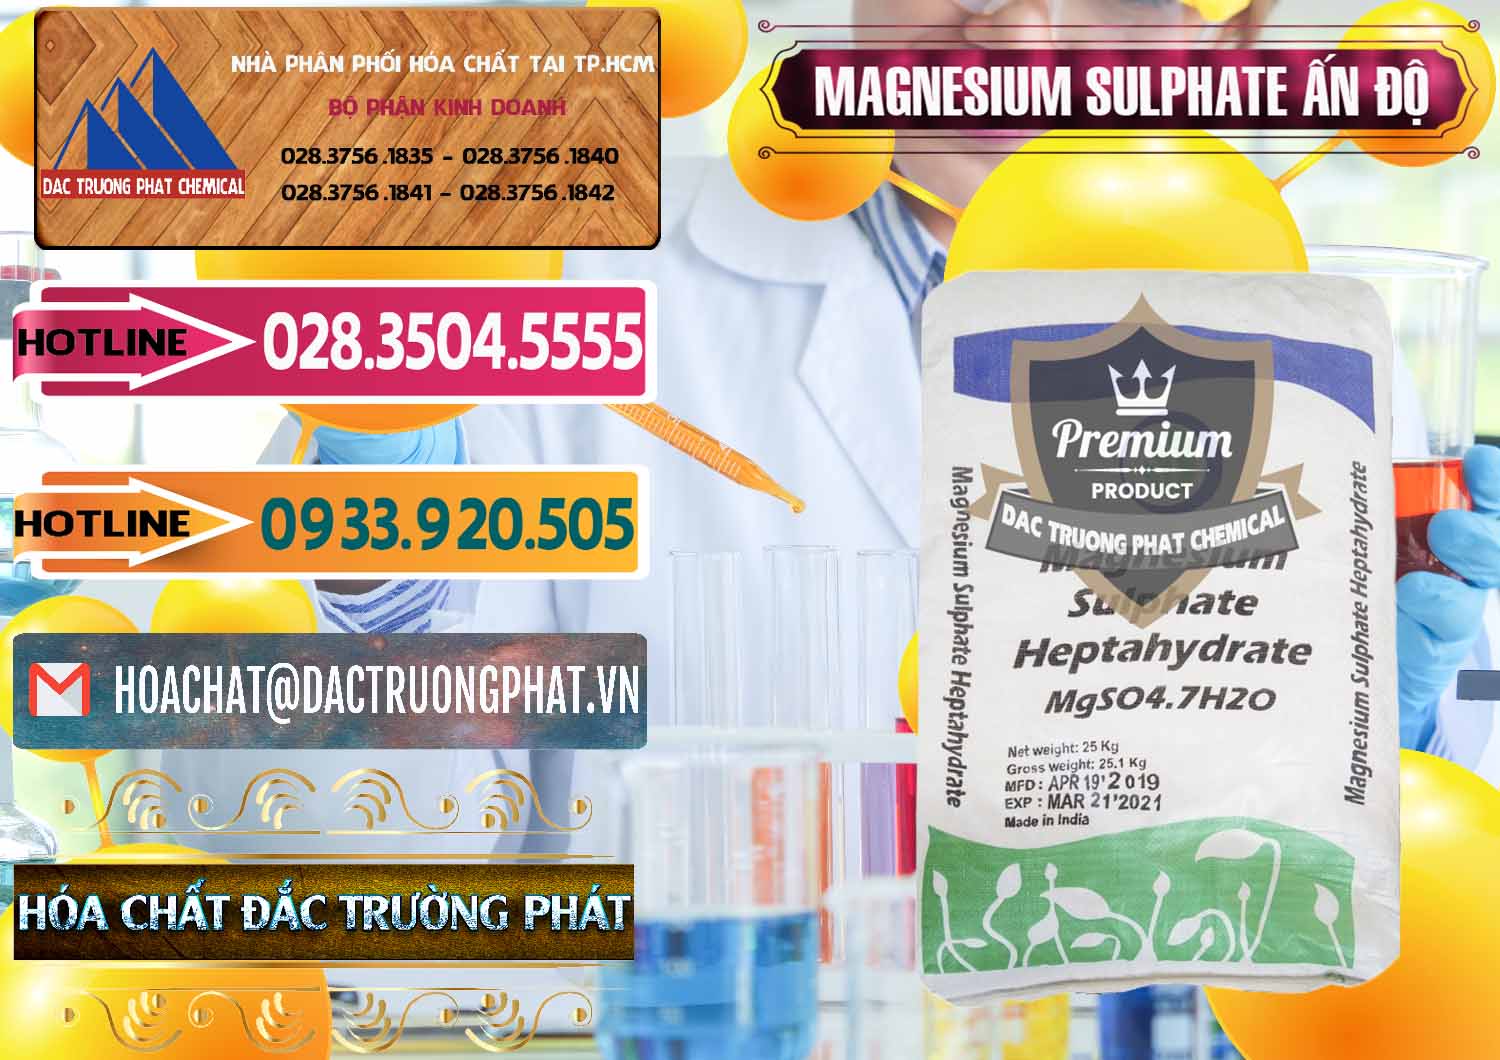 Cty bán - phân phối MGSO4.7H2O – Magnesium Sulphate Heptahydrate Ấn Độ India - 0362 - Cty chuyên kinh doanh và phân phối hóa chất tại TP.HCM - dactruongphat.vn